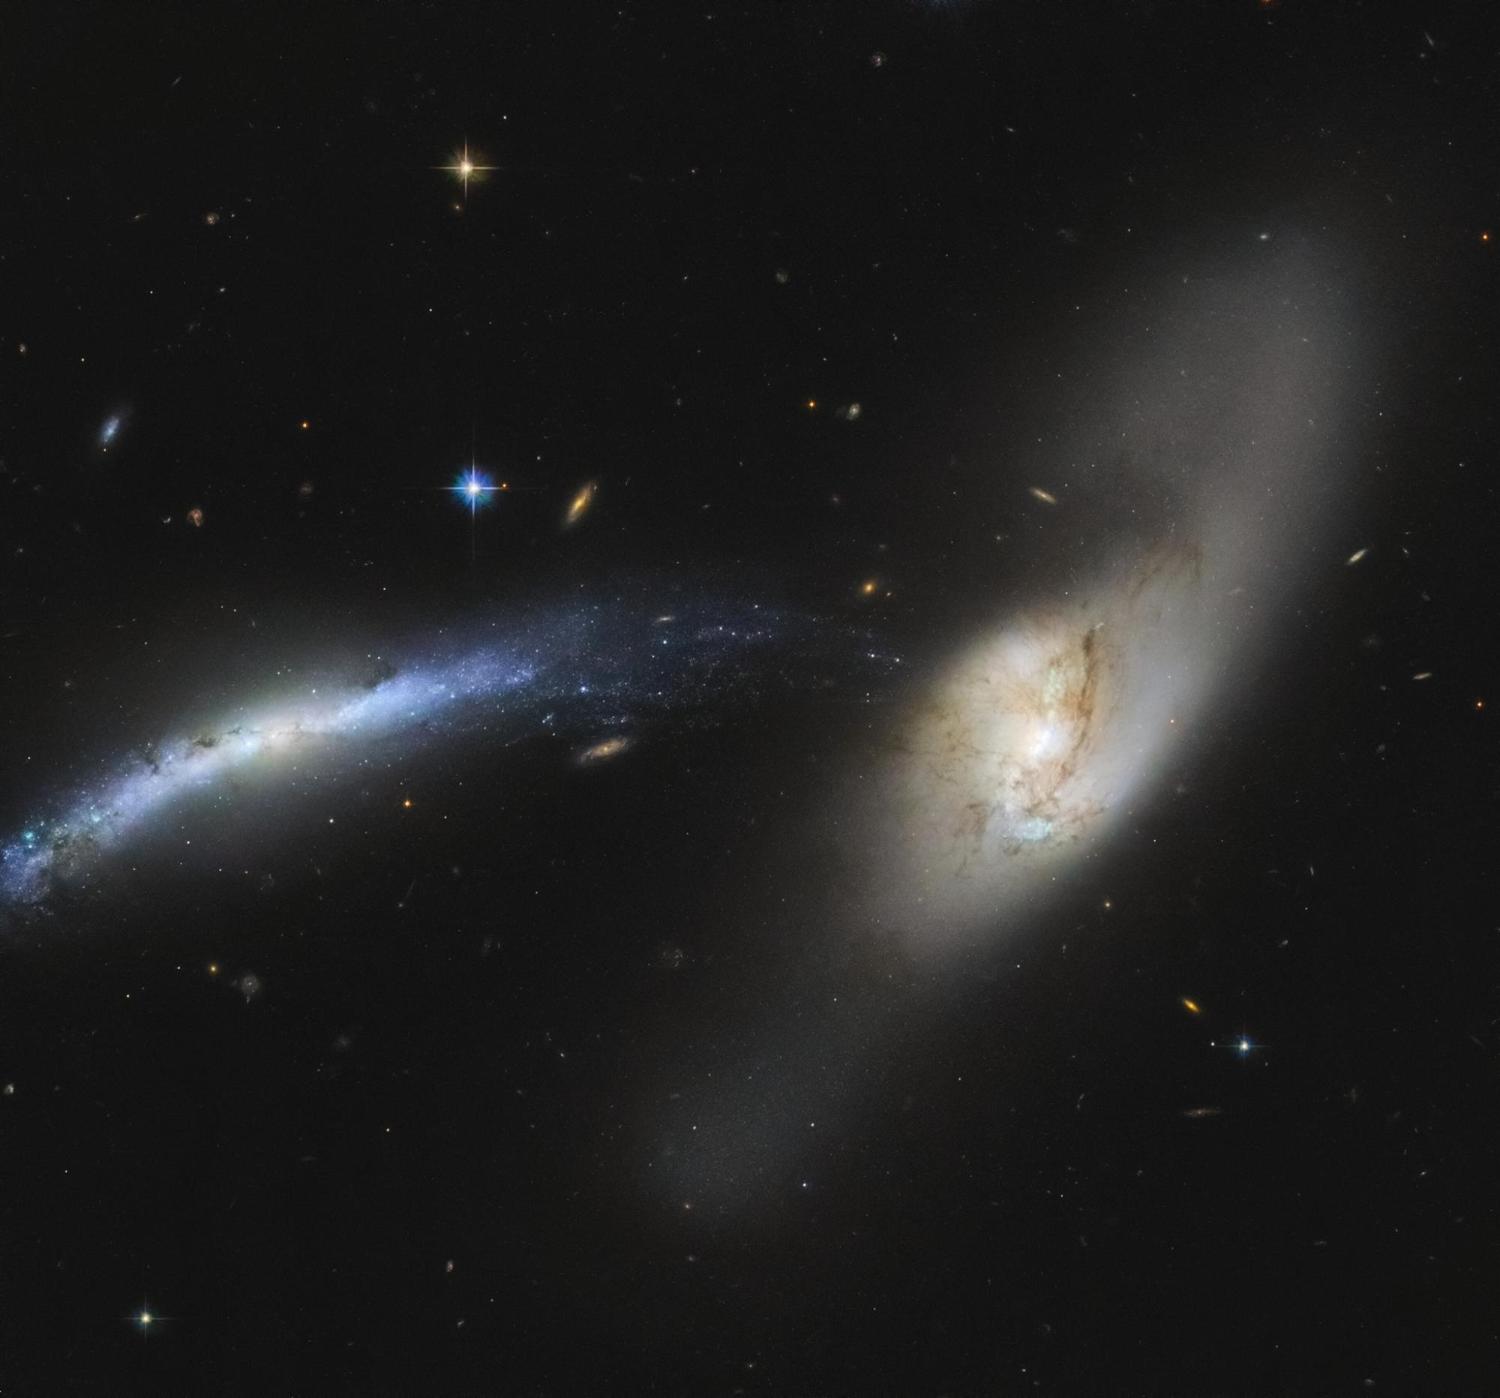 Binlerce yıl süren ‘galaksilerin birleşmesi’ Hubble Uzay Teleskobunda gözlemlendi